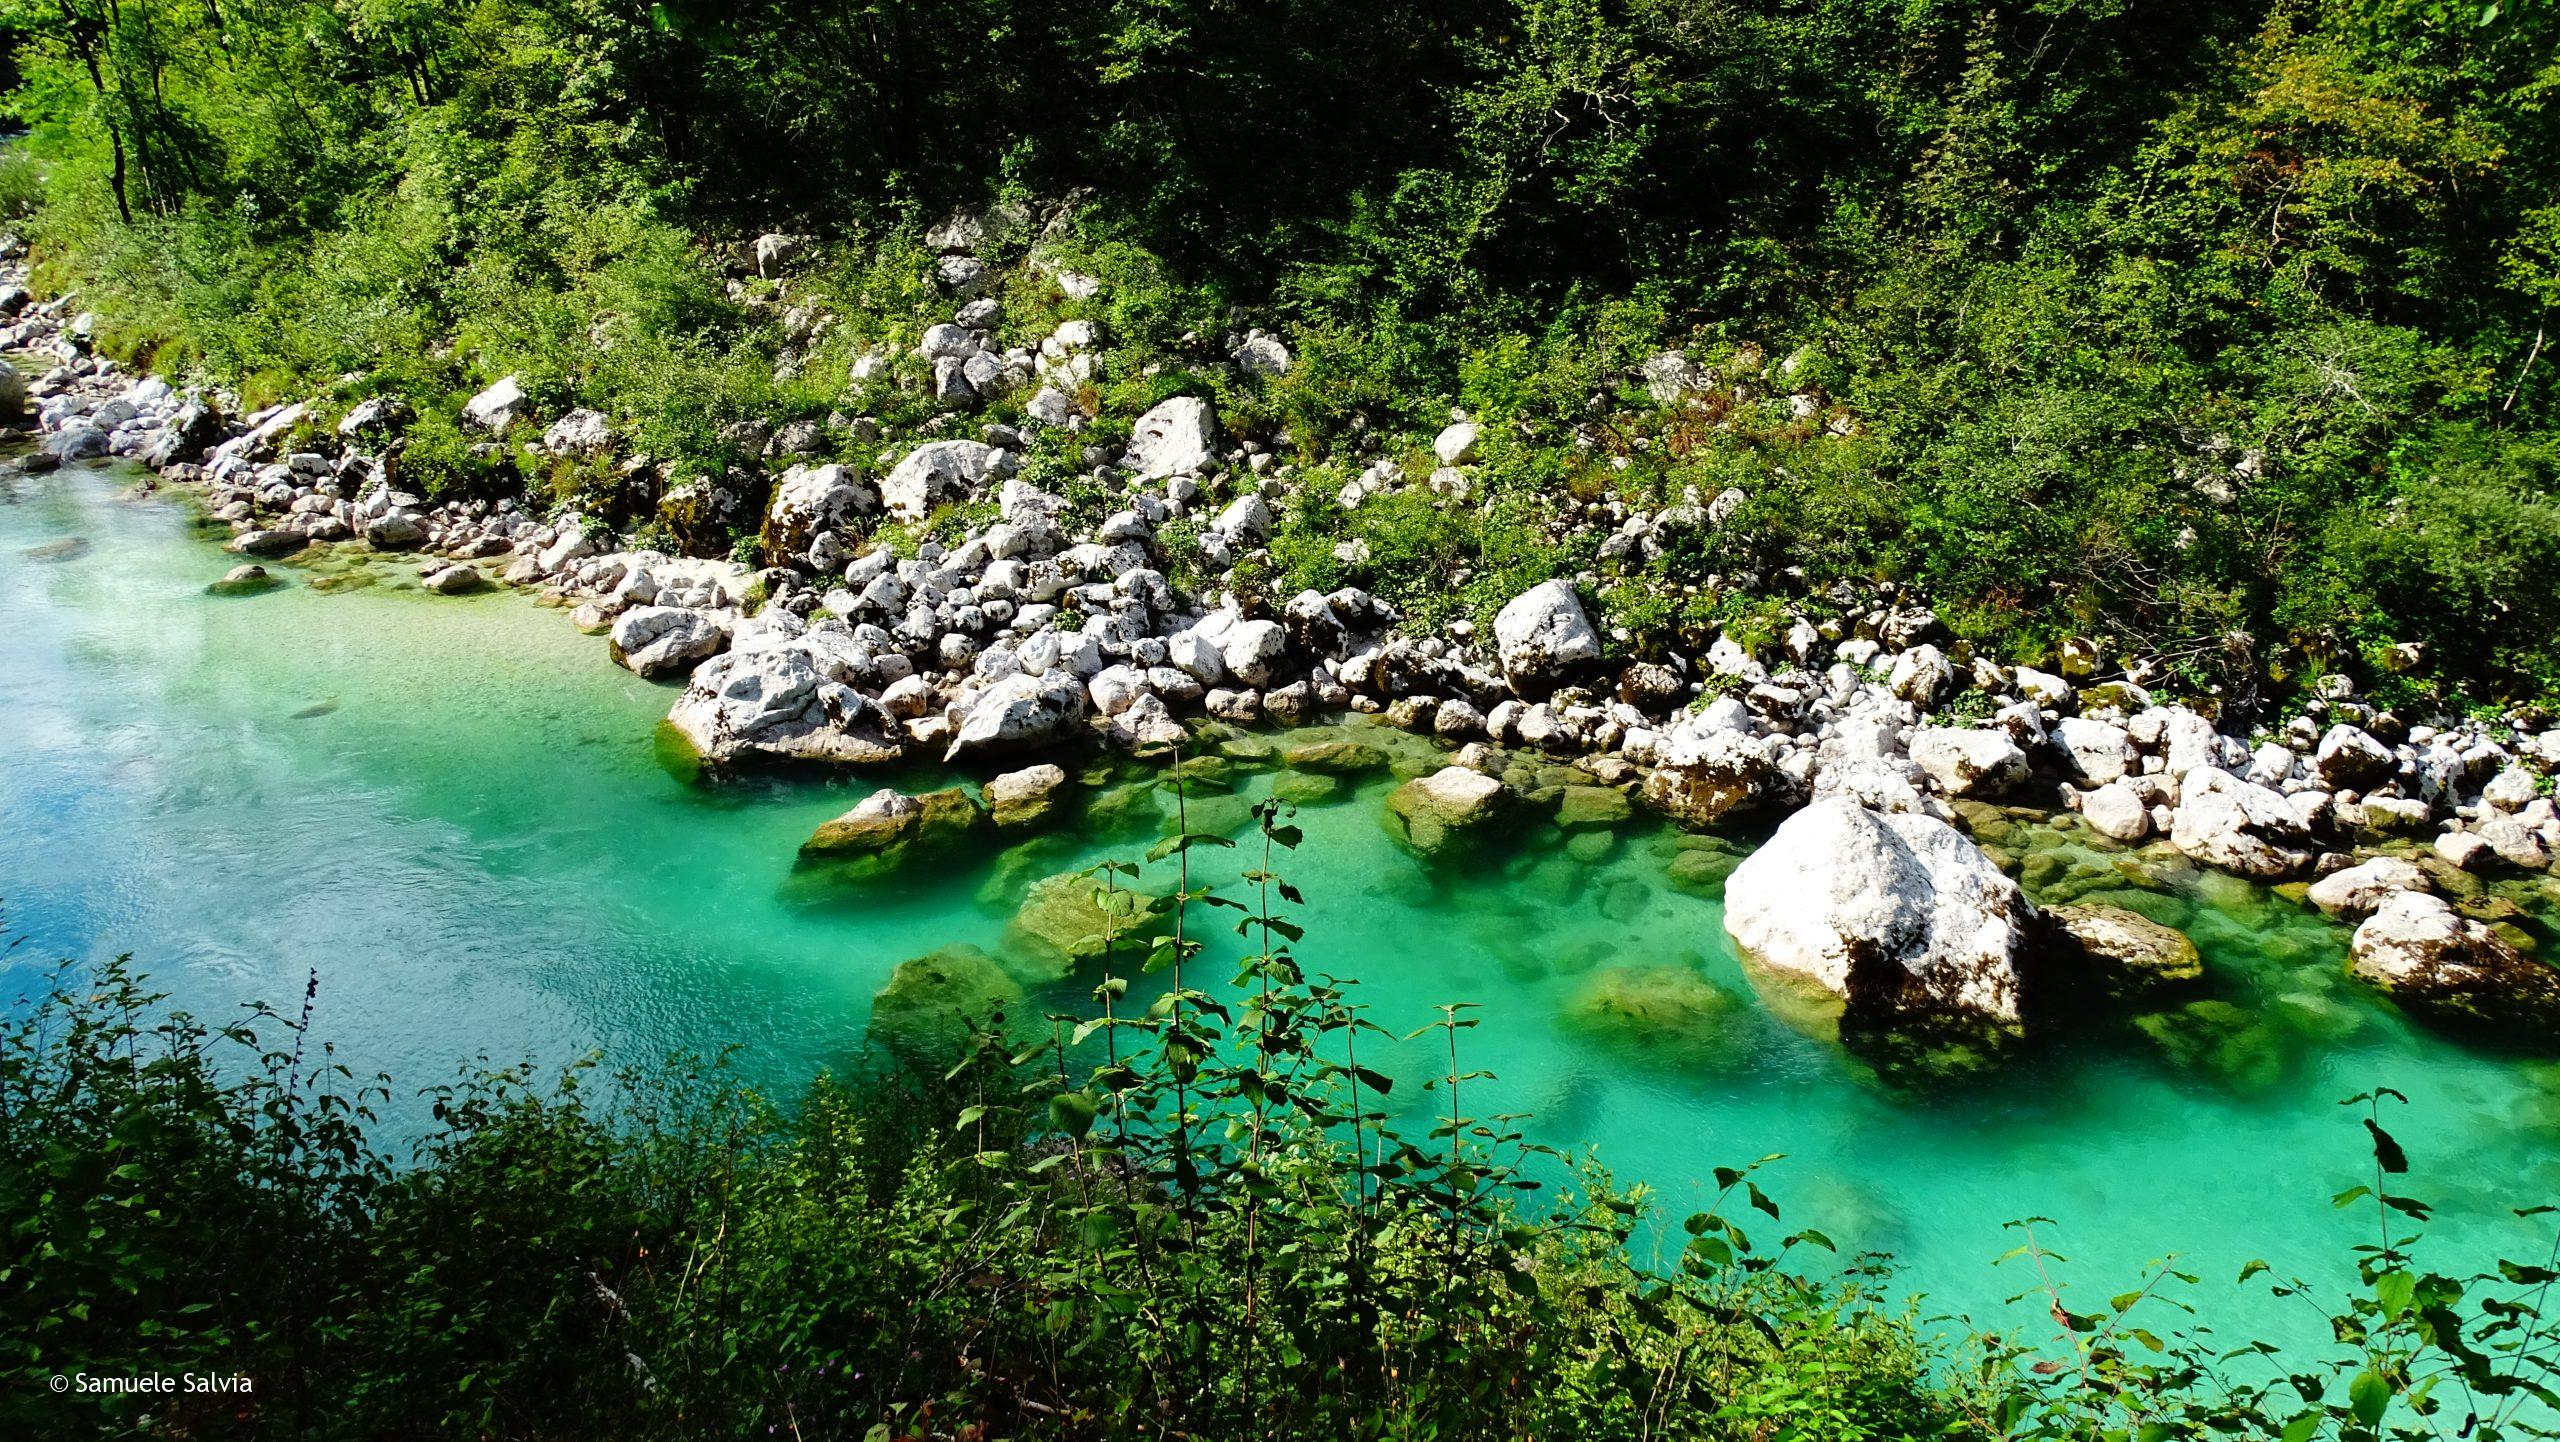 Le acque color smeraldo del fiume Isonzo (Soca) nei pressi di Caporetto (Kobarid).